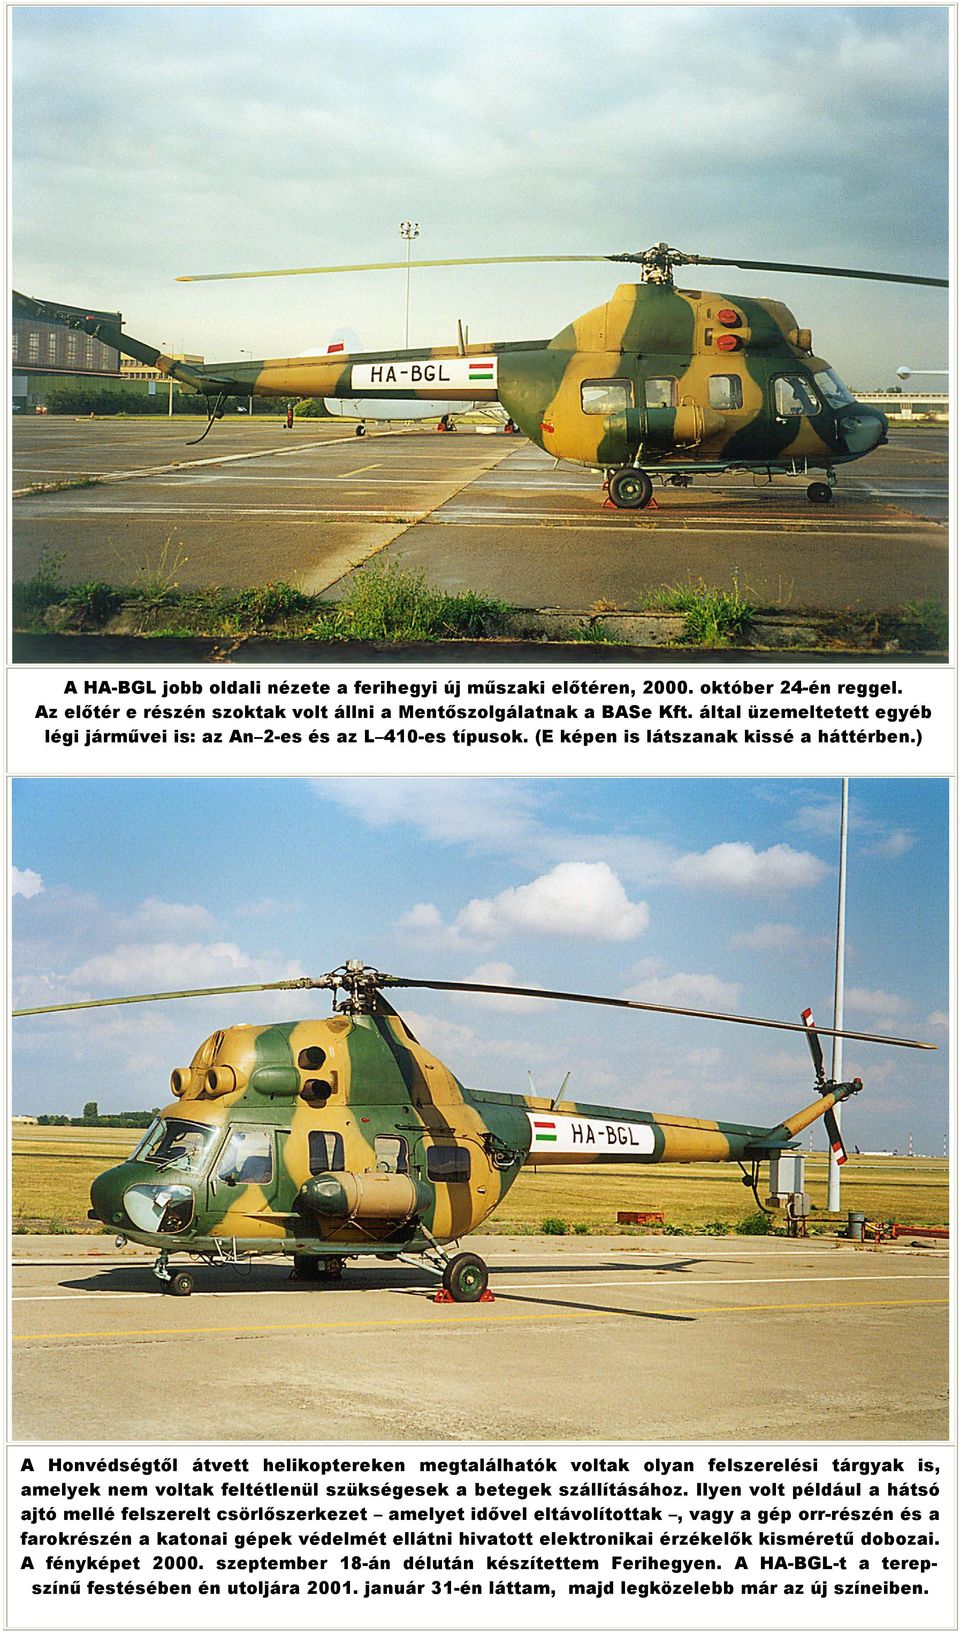 ) A Honvédségtıl átvett helikoptereken megtalálhatók voltak olyan felszerelési tárgyak is, amelyek nem voltak feltétlenül szükségesek a betegek szállításához.